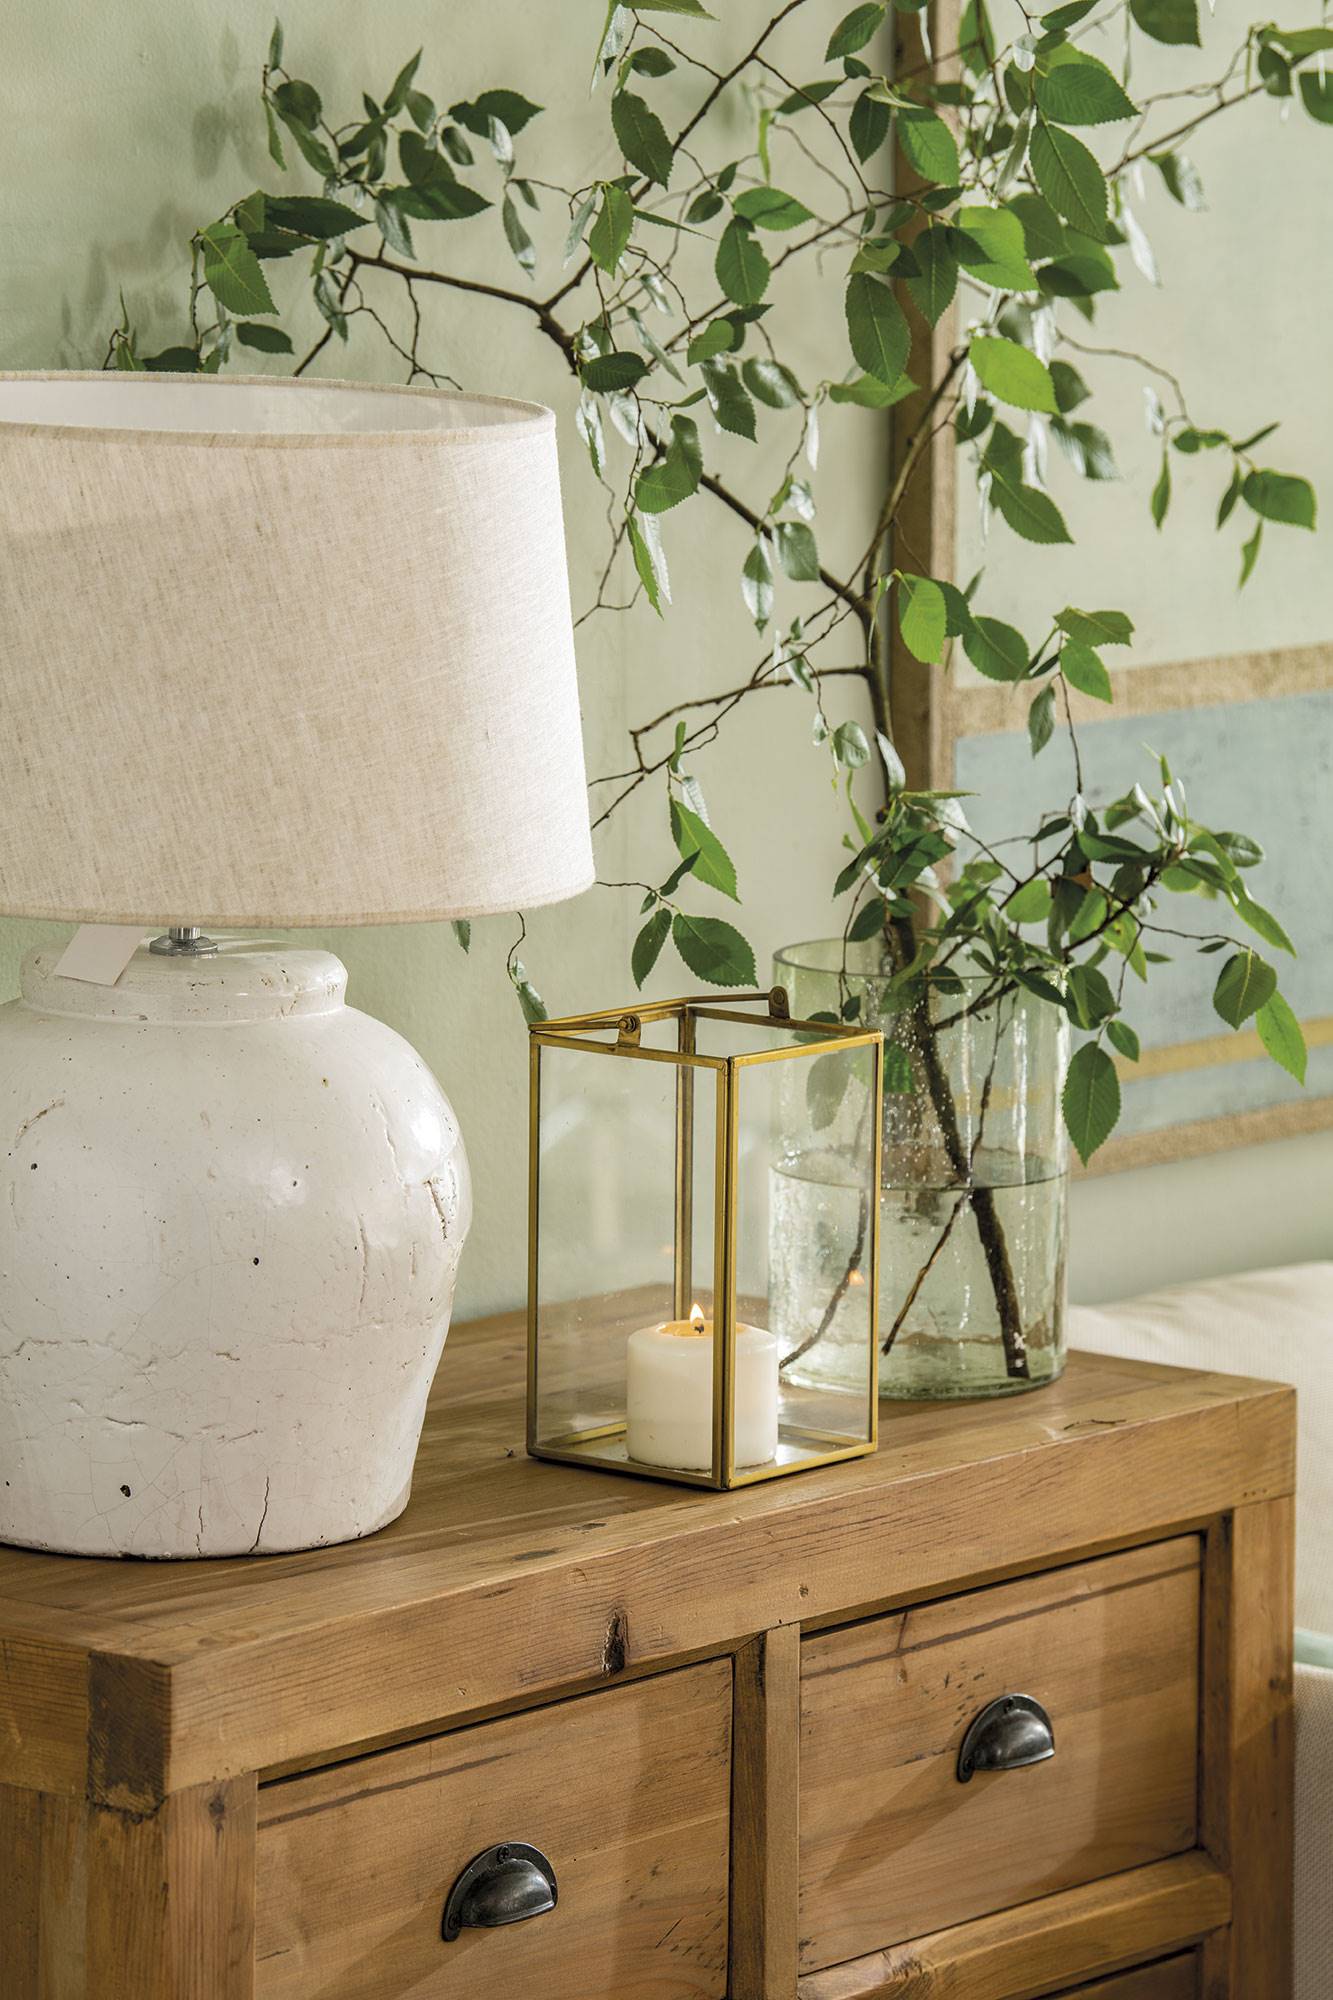 Cómoda de madera con lámpara de mesa de cerámica blanca, candelabro de cristal y latón con una vela y jarrón.